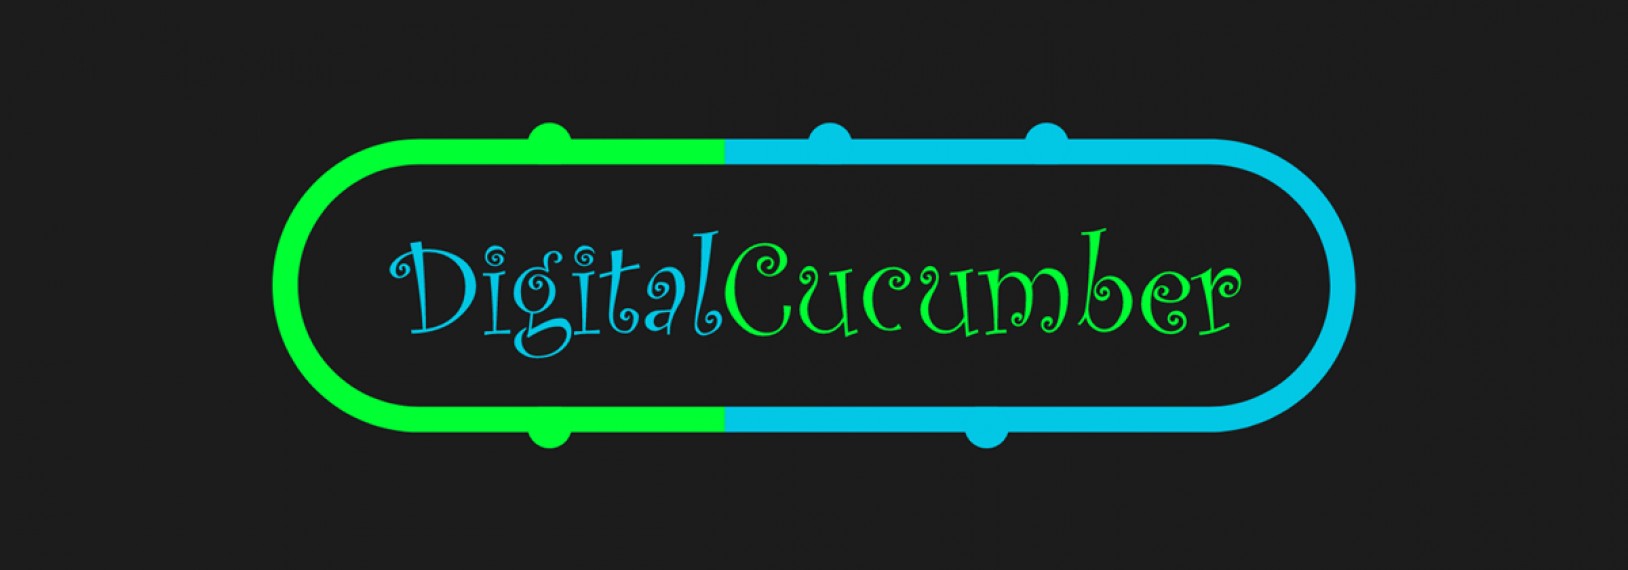 Digital Cucumber Agency